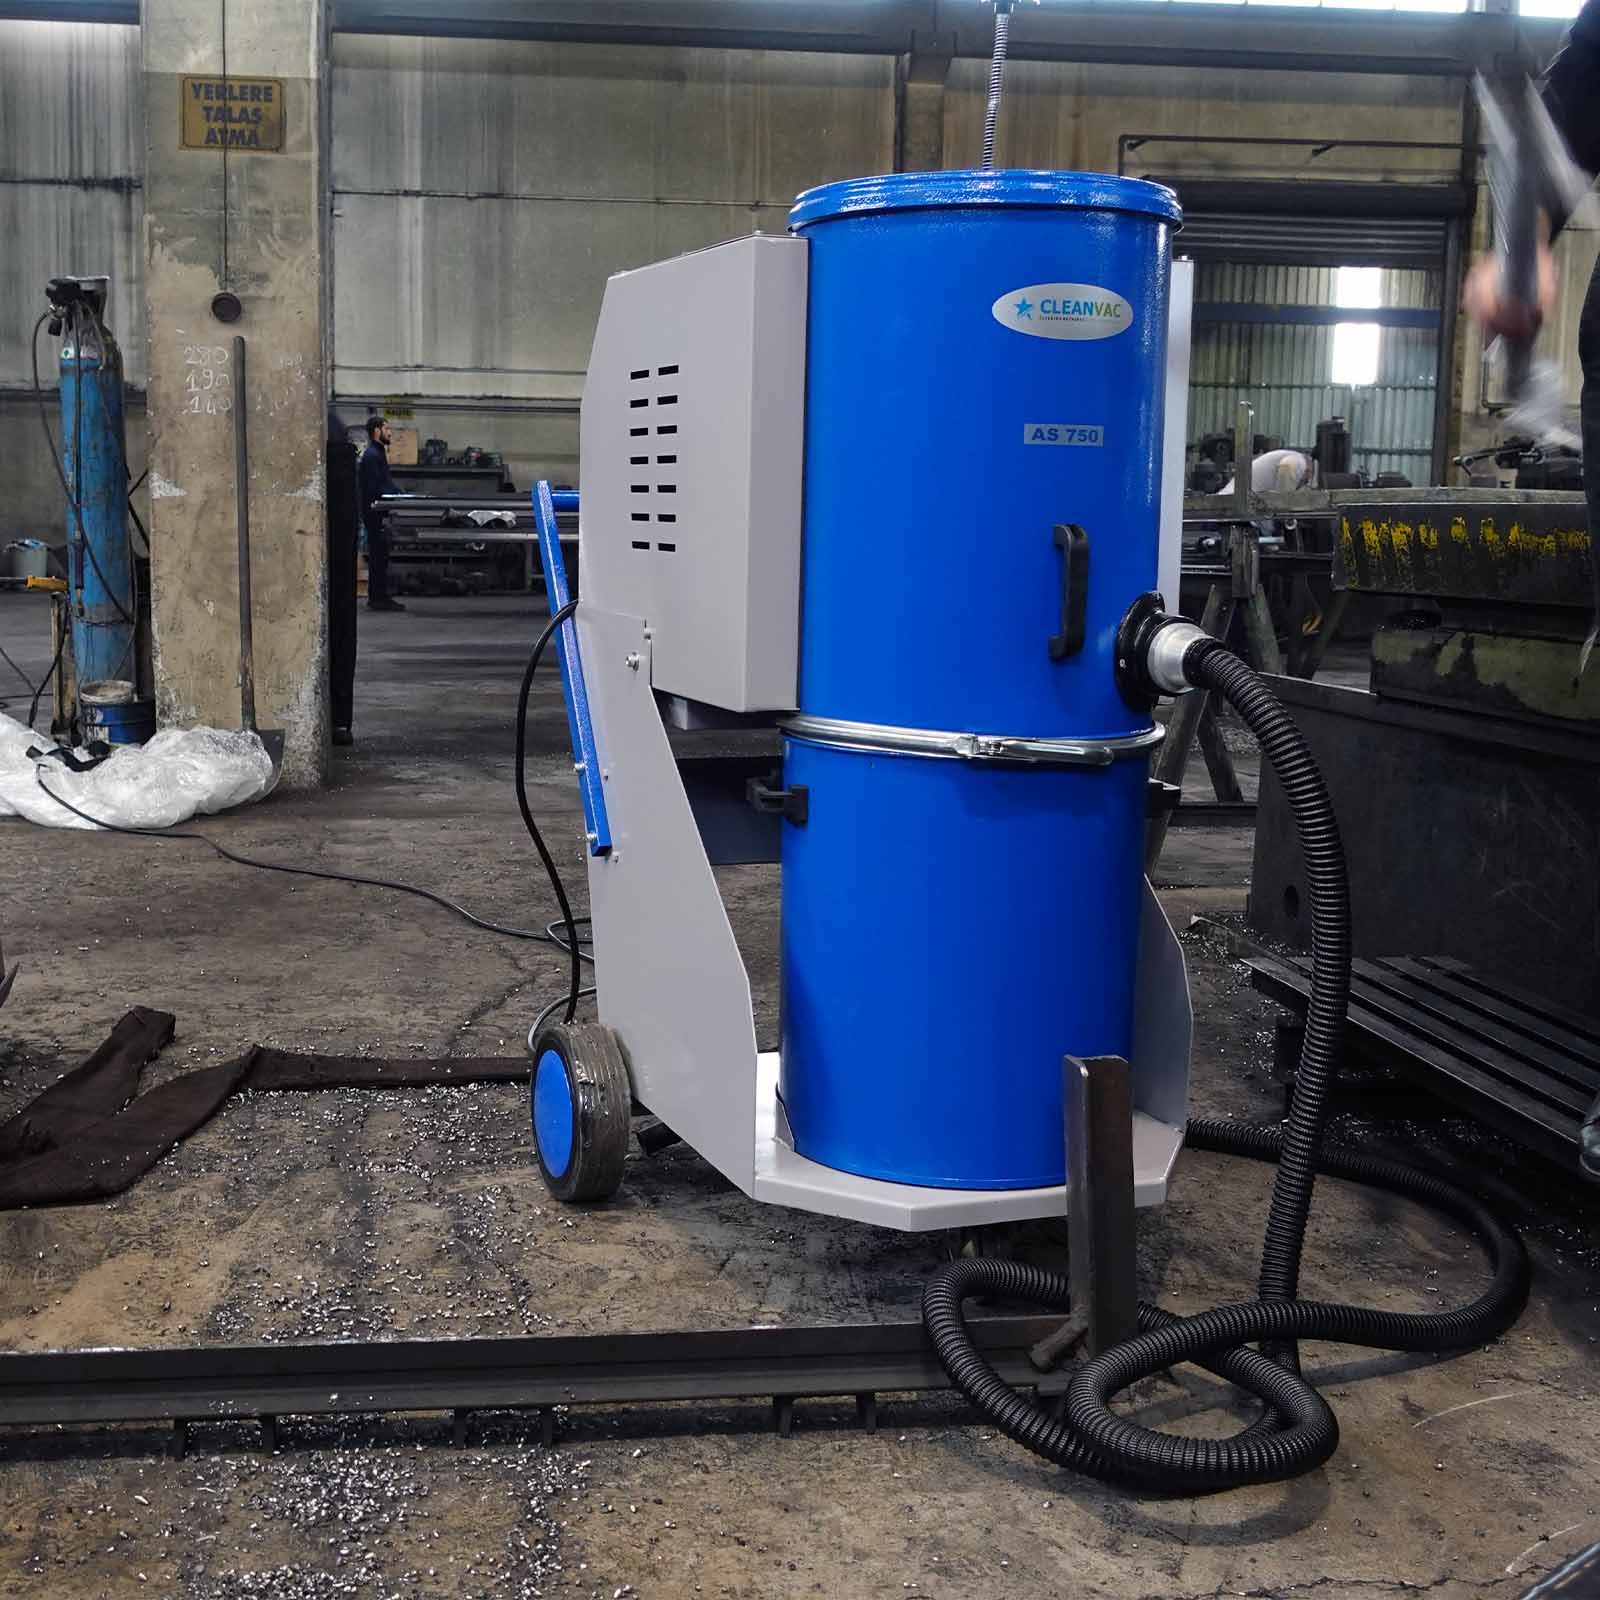 Endüstriyel Vakum Makinaları: Temizlik ve Üretimdeki Güçlü Yardımcılar